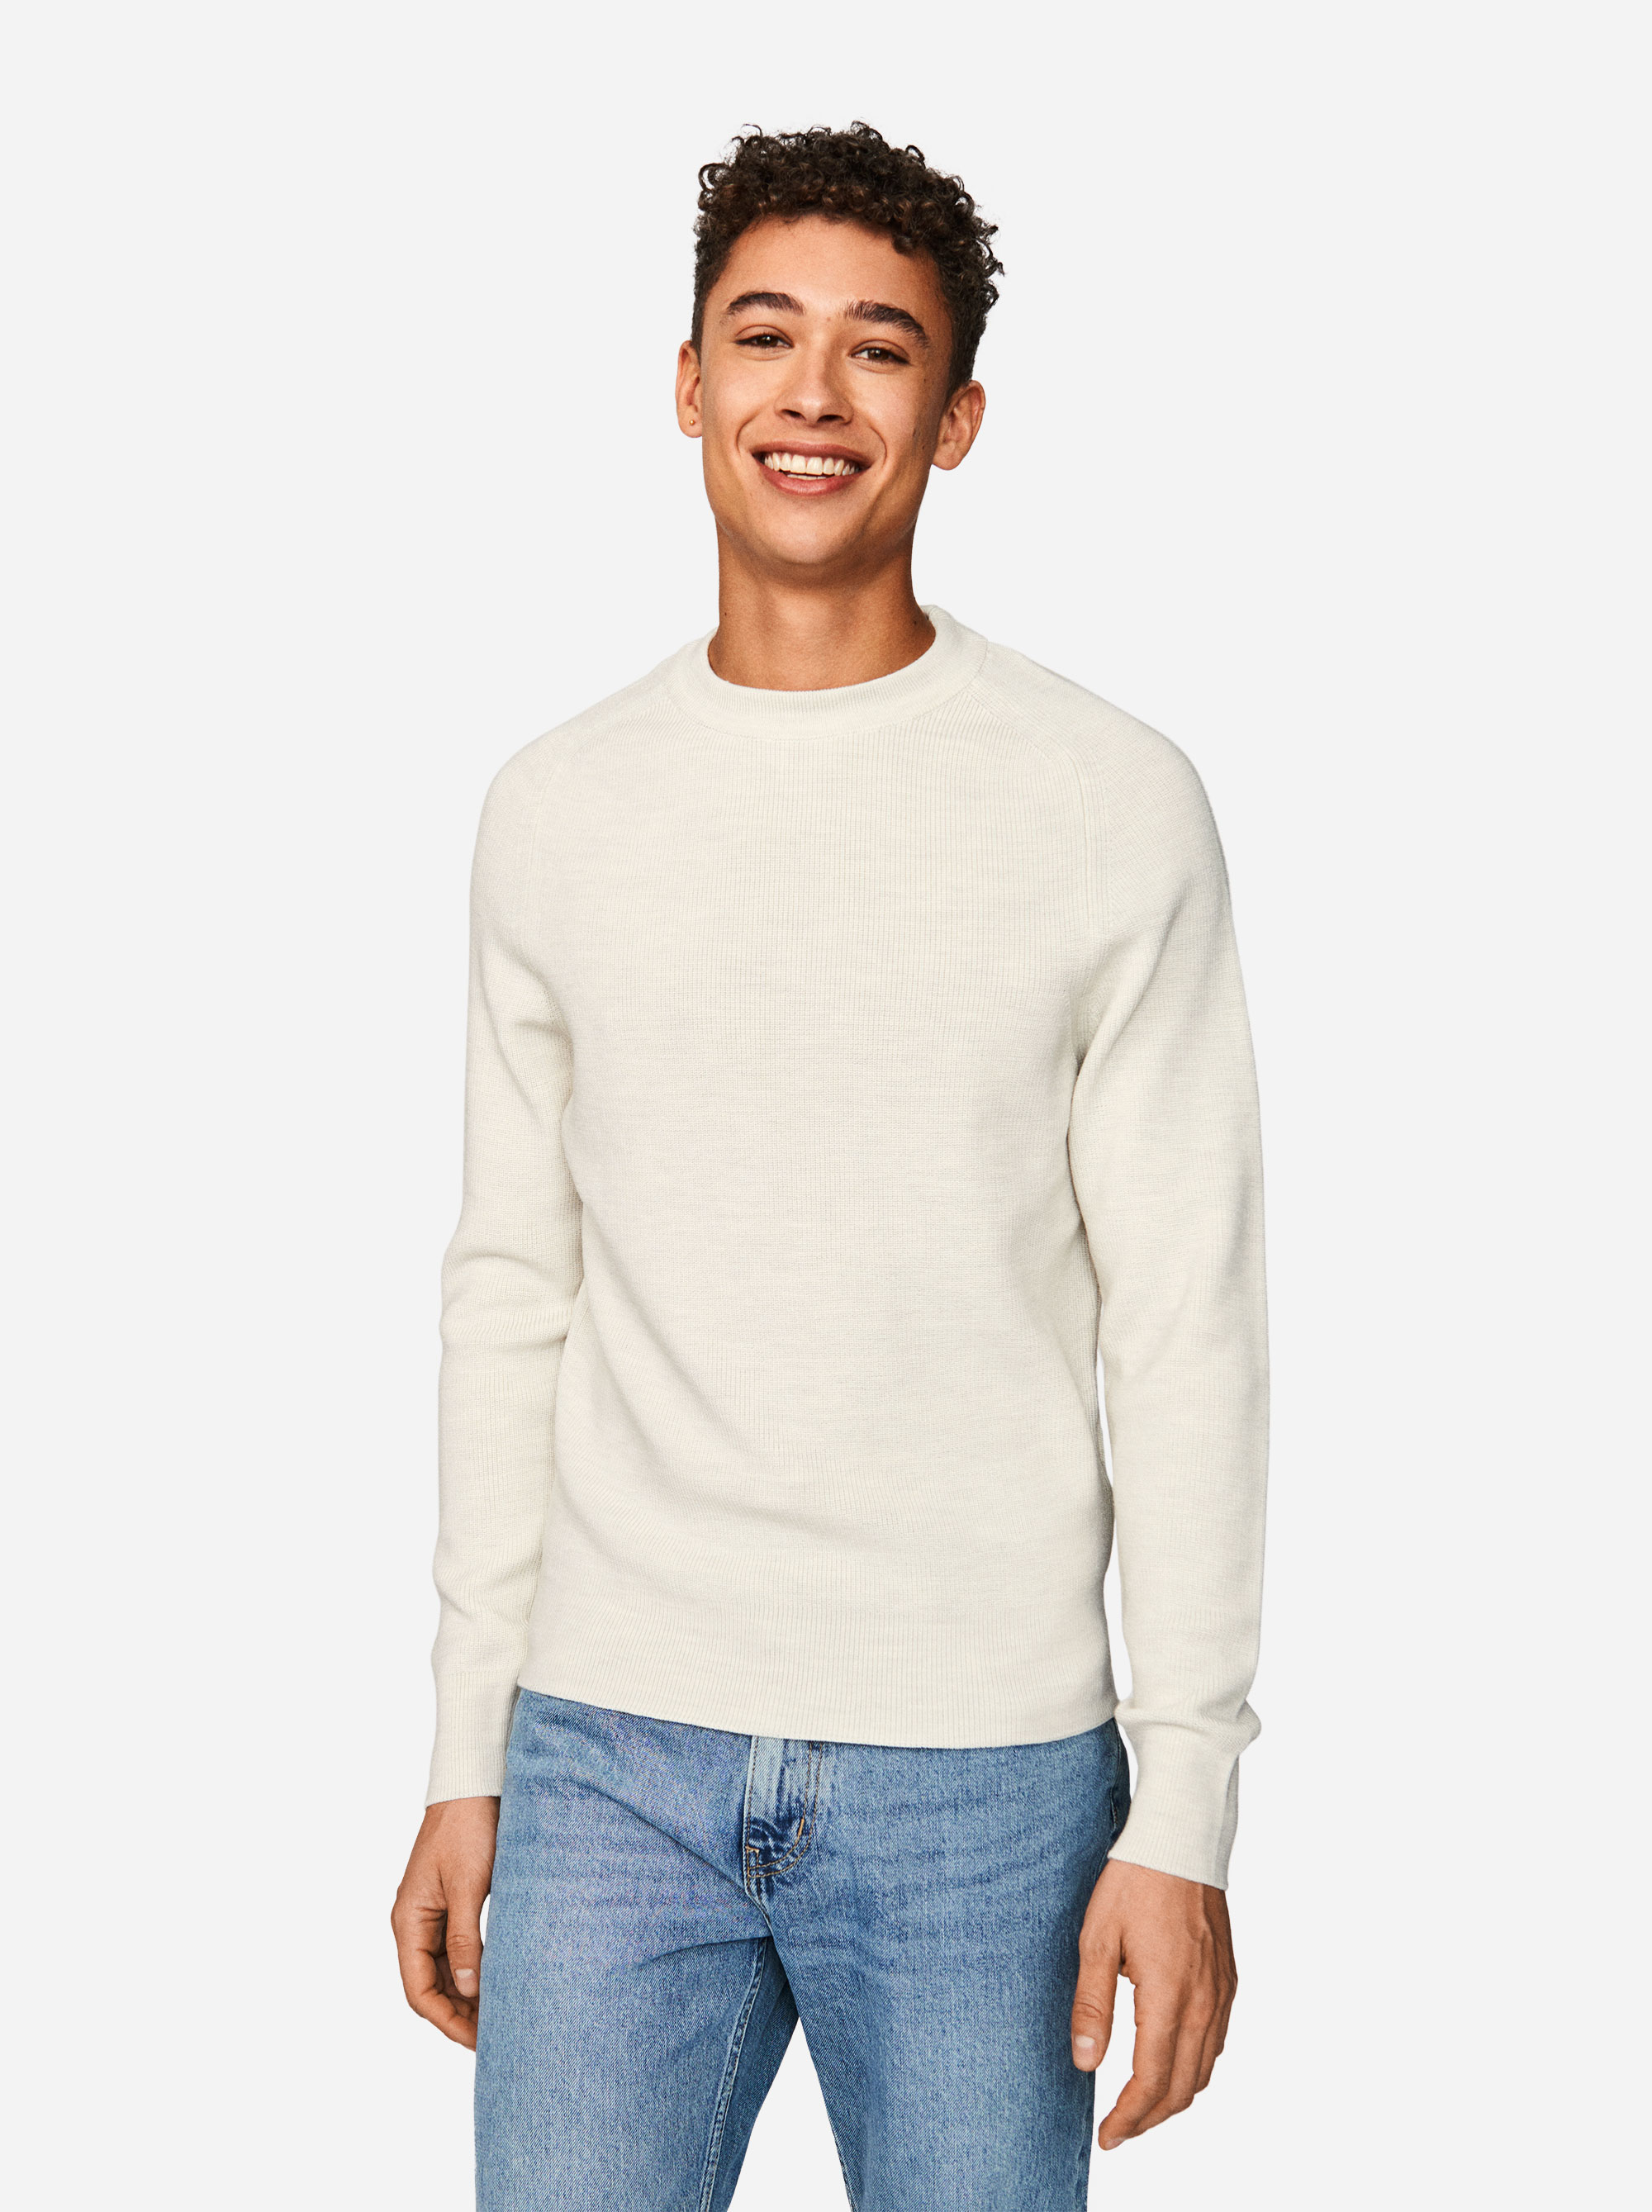 Teym - The Merino Sweater - Men - White - 4